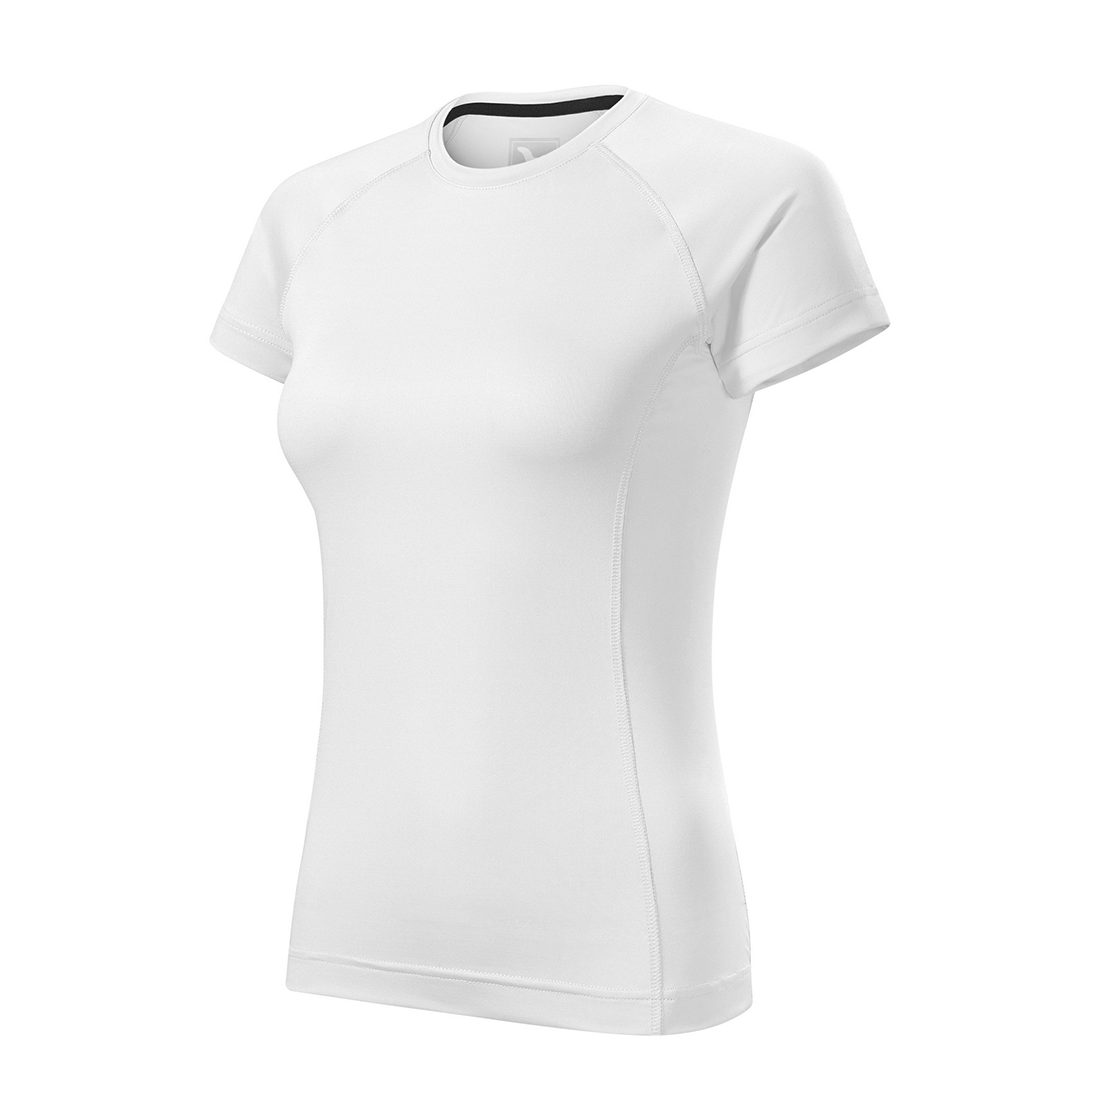 Women's T-shirt DESTINY - Safetywear